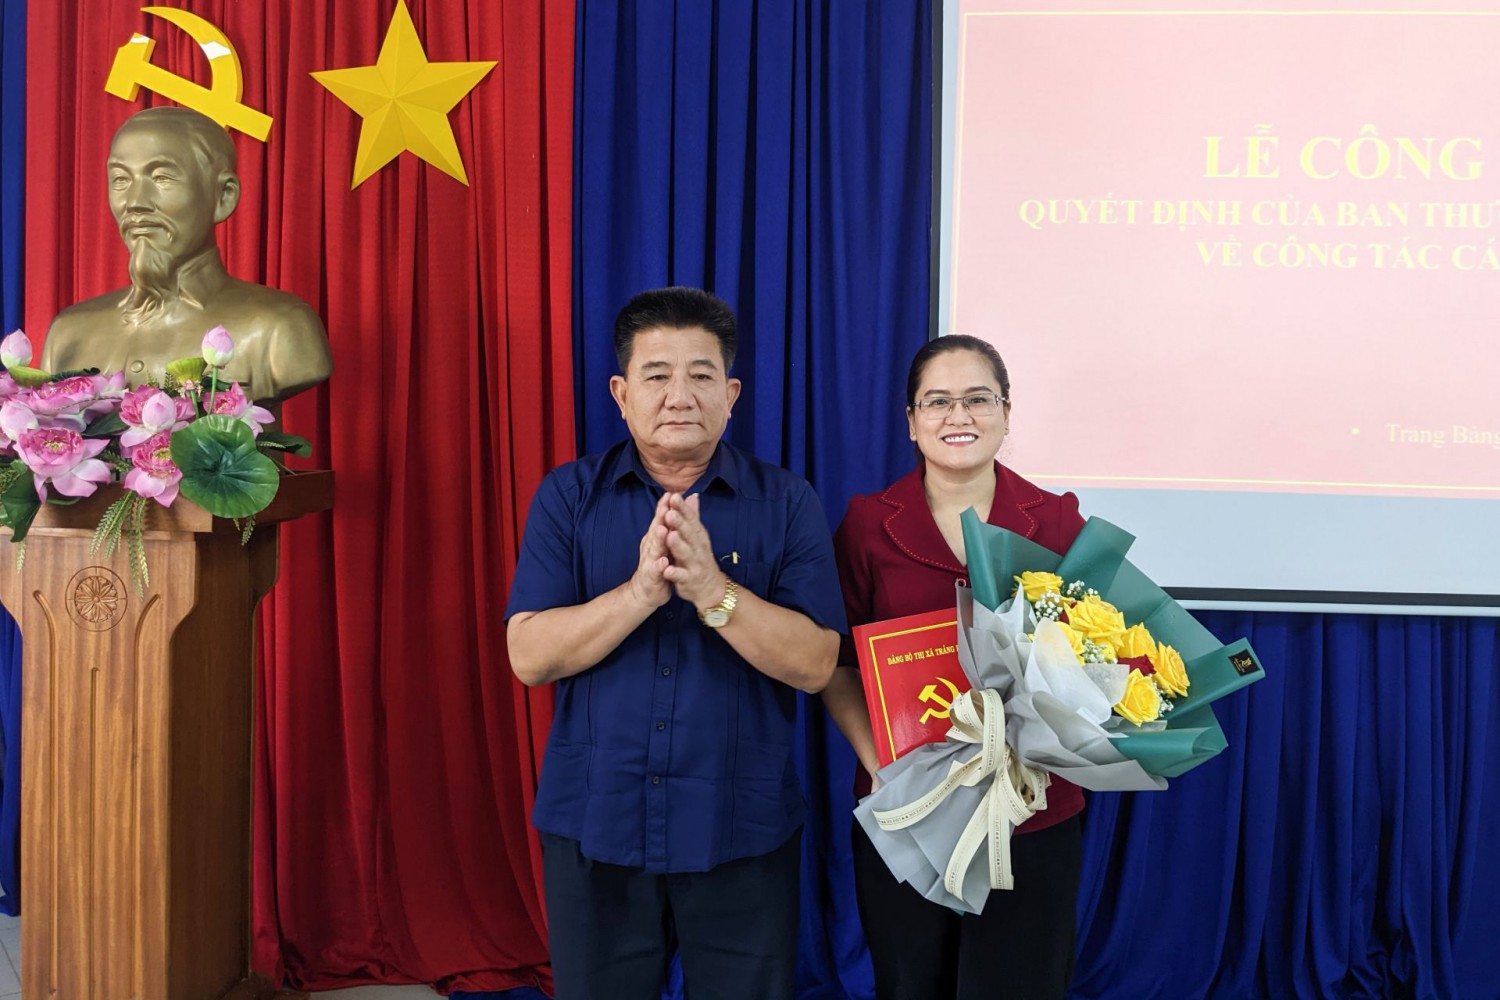 Bí thư Thị ủy Trảng Bàng Võ Văn Dũng trao quyết định bổ nhiệm Trưởng Ban Tuyên giáo Thị ủy cho bà Nguyễn Thị Thủy Cúc